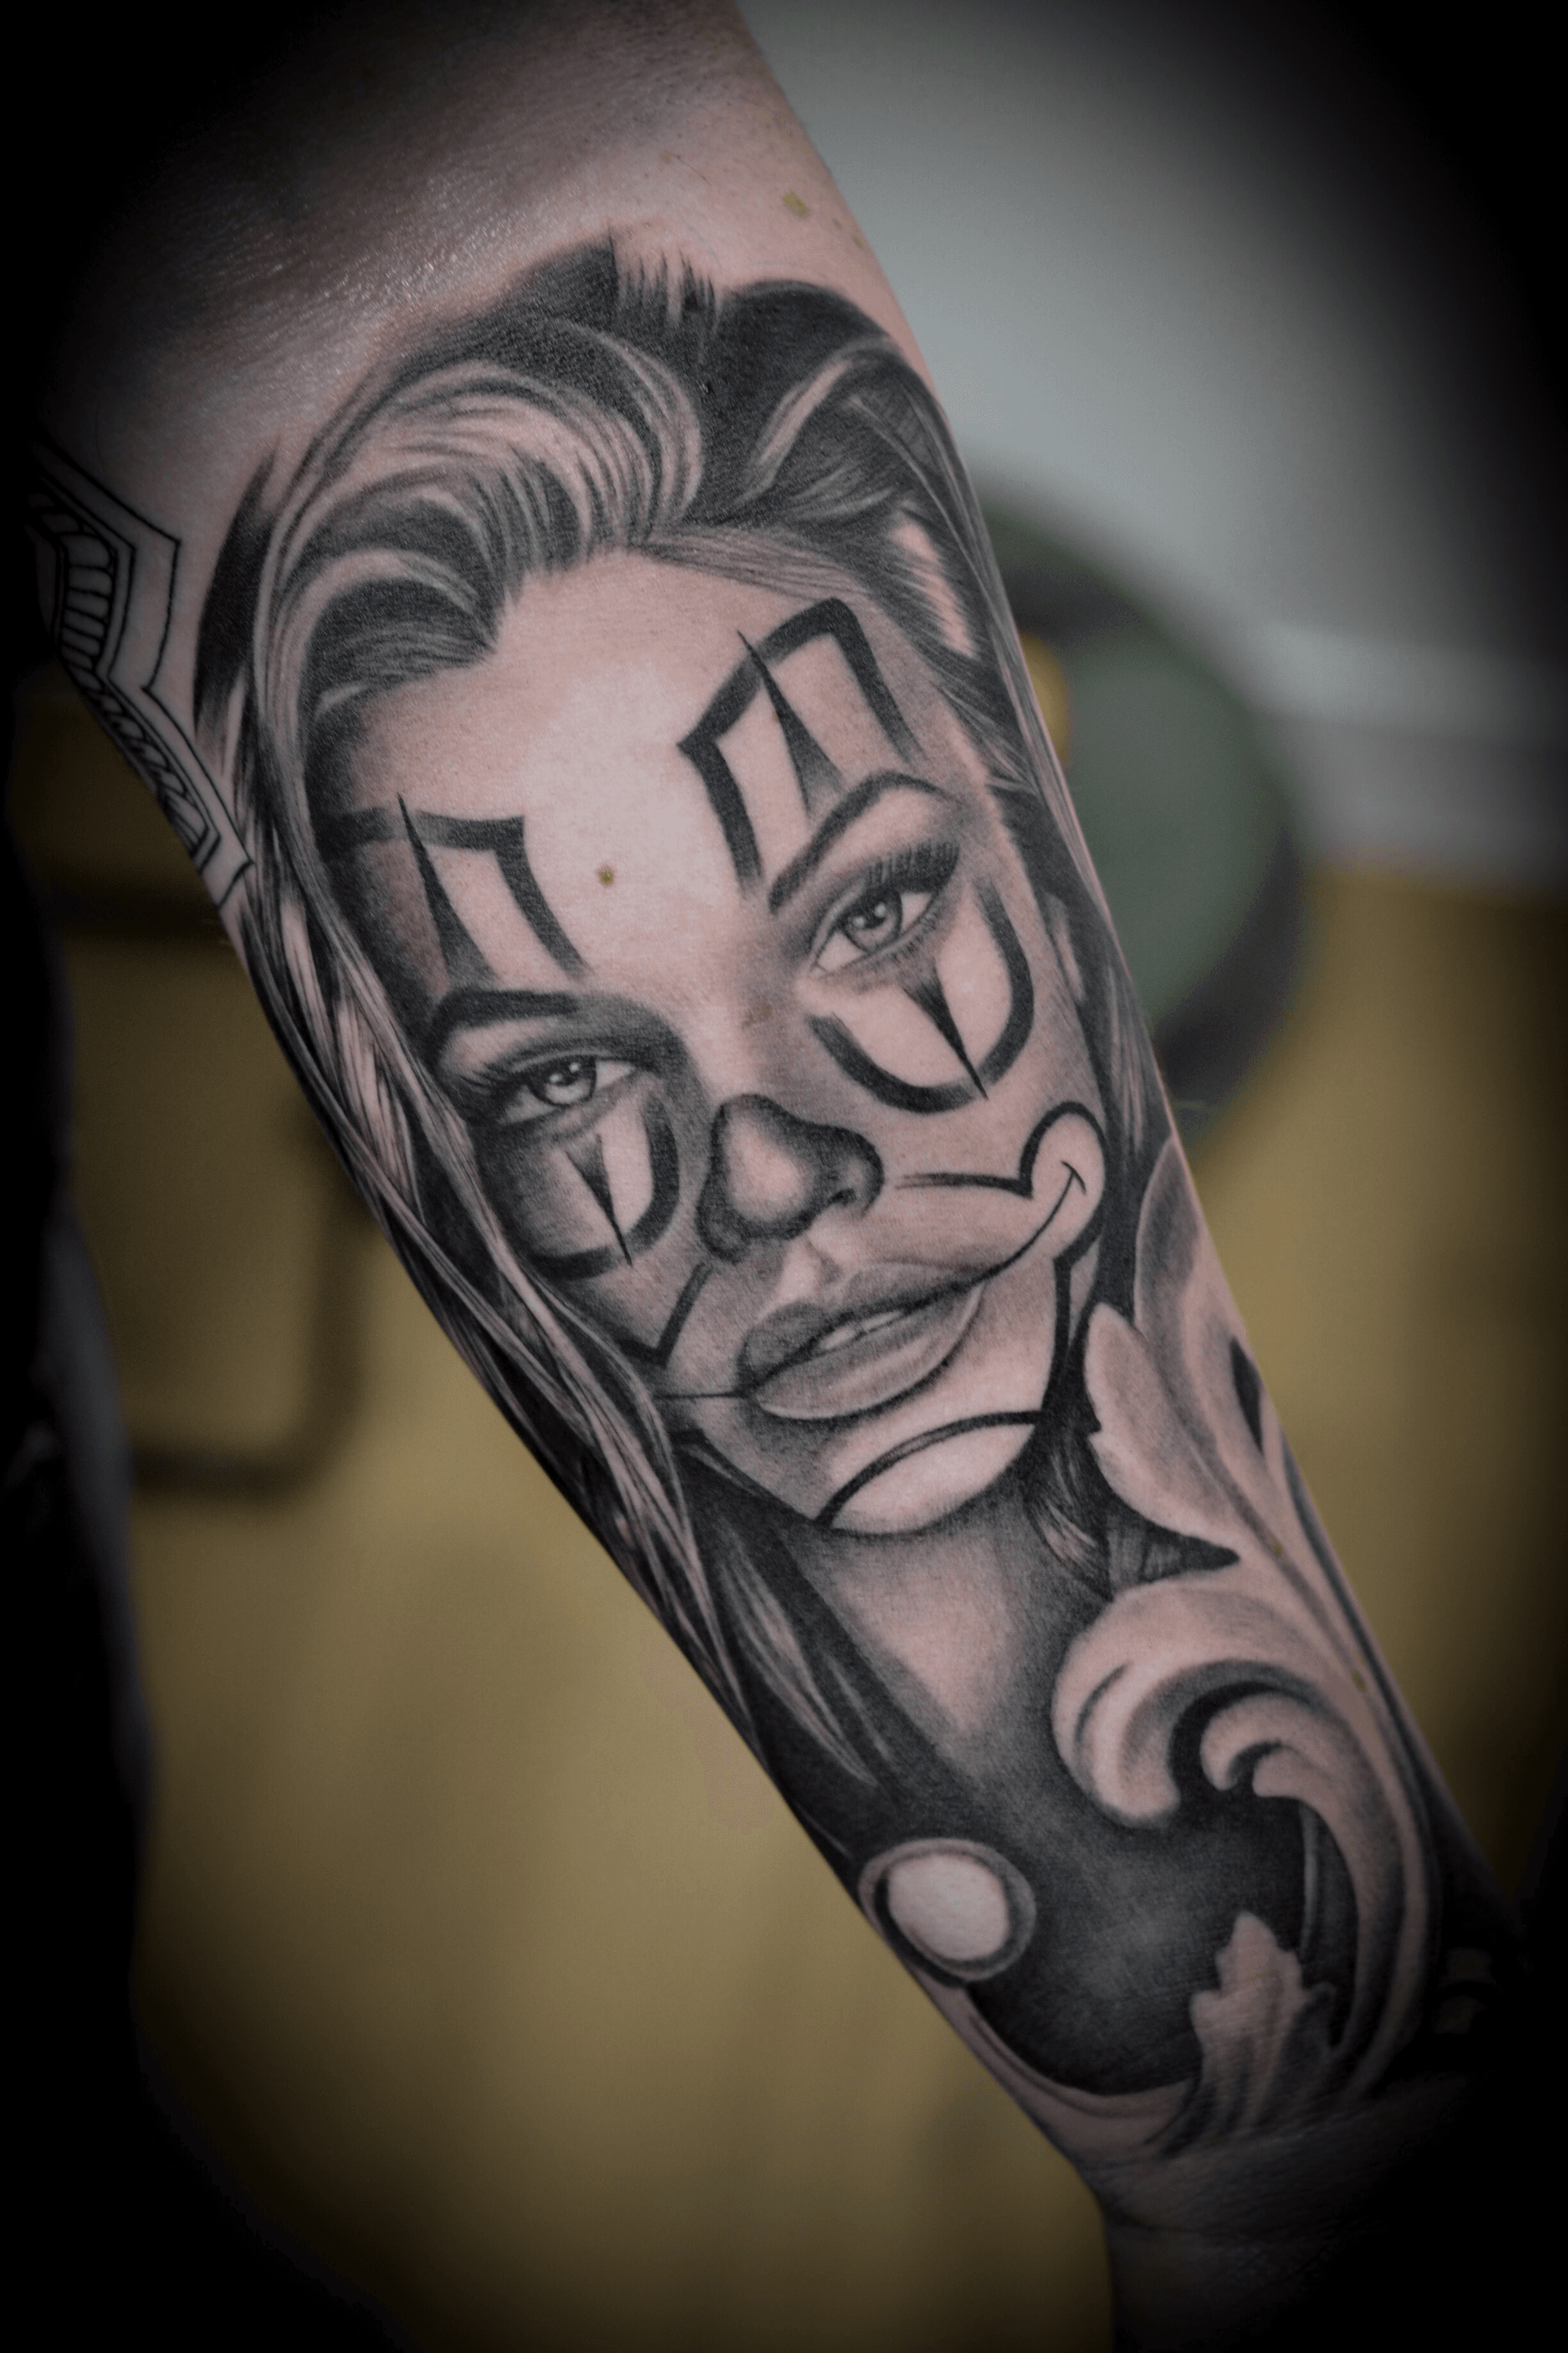 Klage sol Overstige Tattoo uploaded by darick • Clown girl by @daricktattoos #clowngirl #makeup  #payasa #tatouage #tattoo #tattooart #chicano #blackandgrey #portrait •  Tattoodo